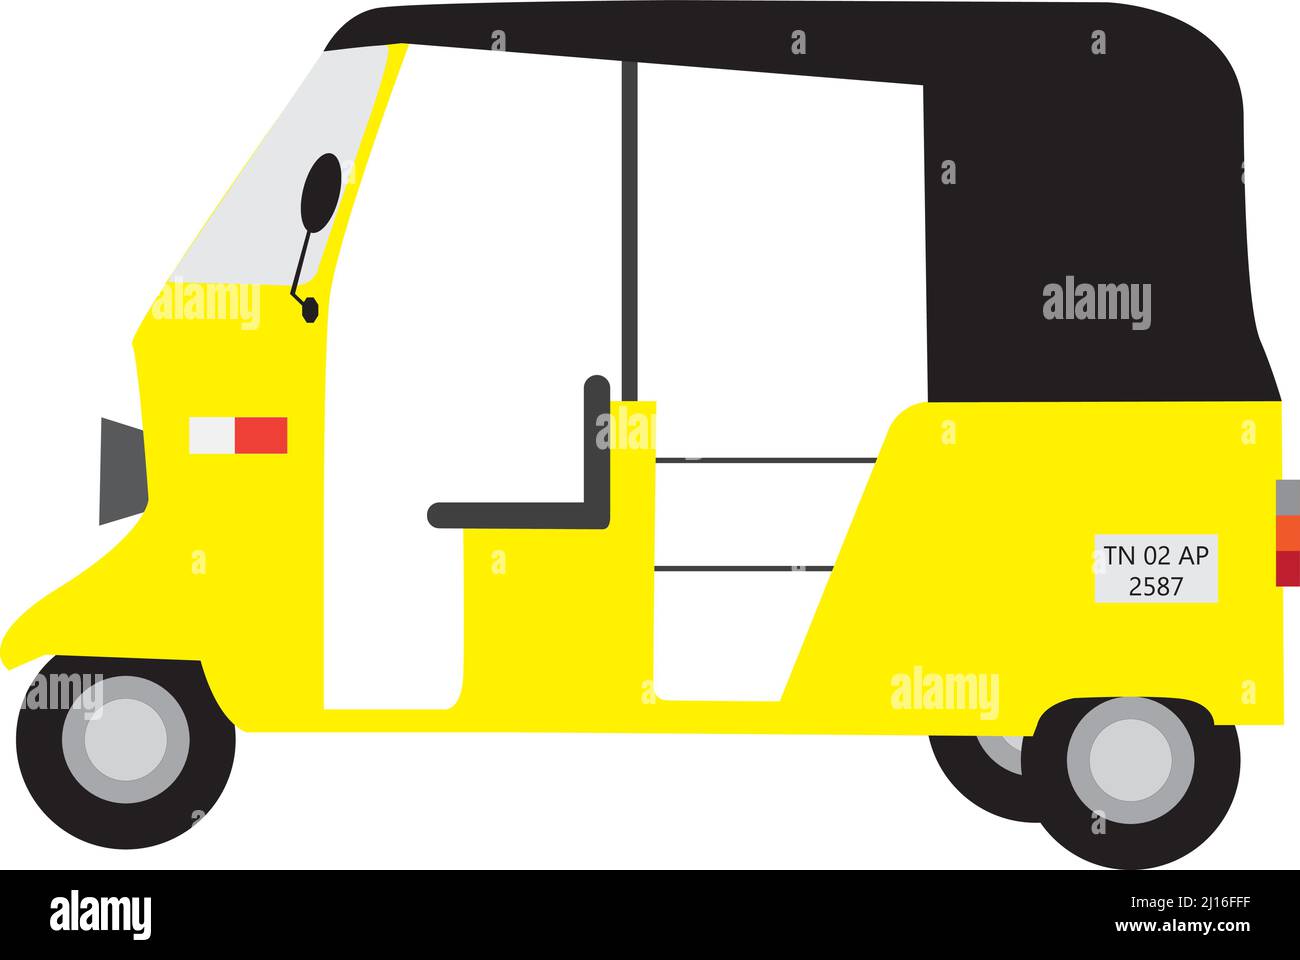 vektor der gelben Auto-Rikscha, ein primäres Transportfahrzeug in Tamilnadu, Indien Stock Vektor